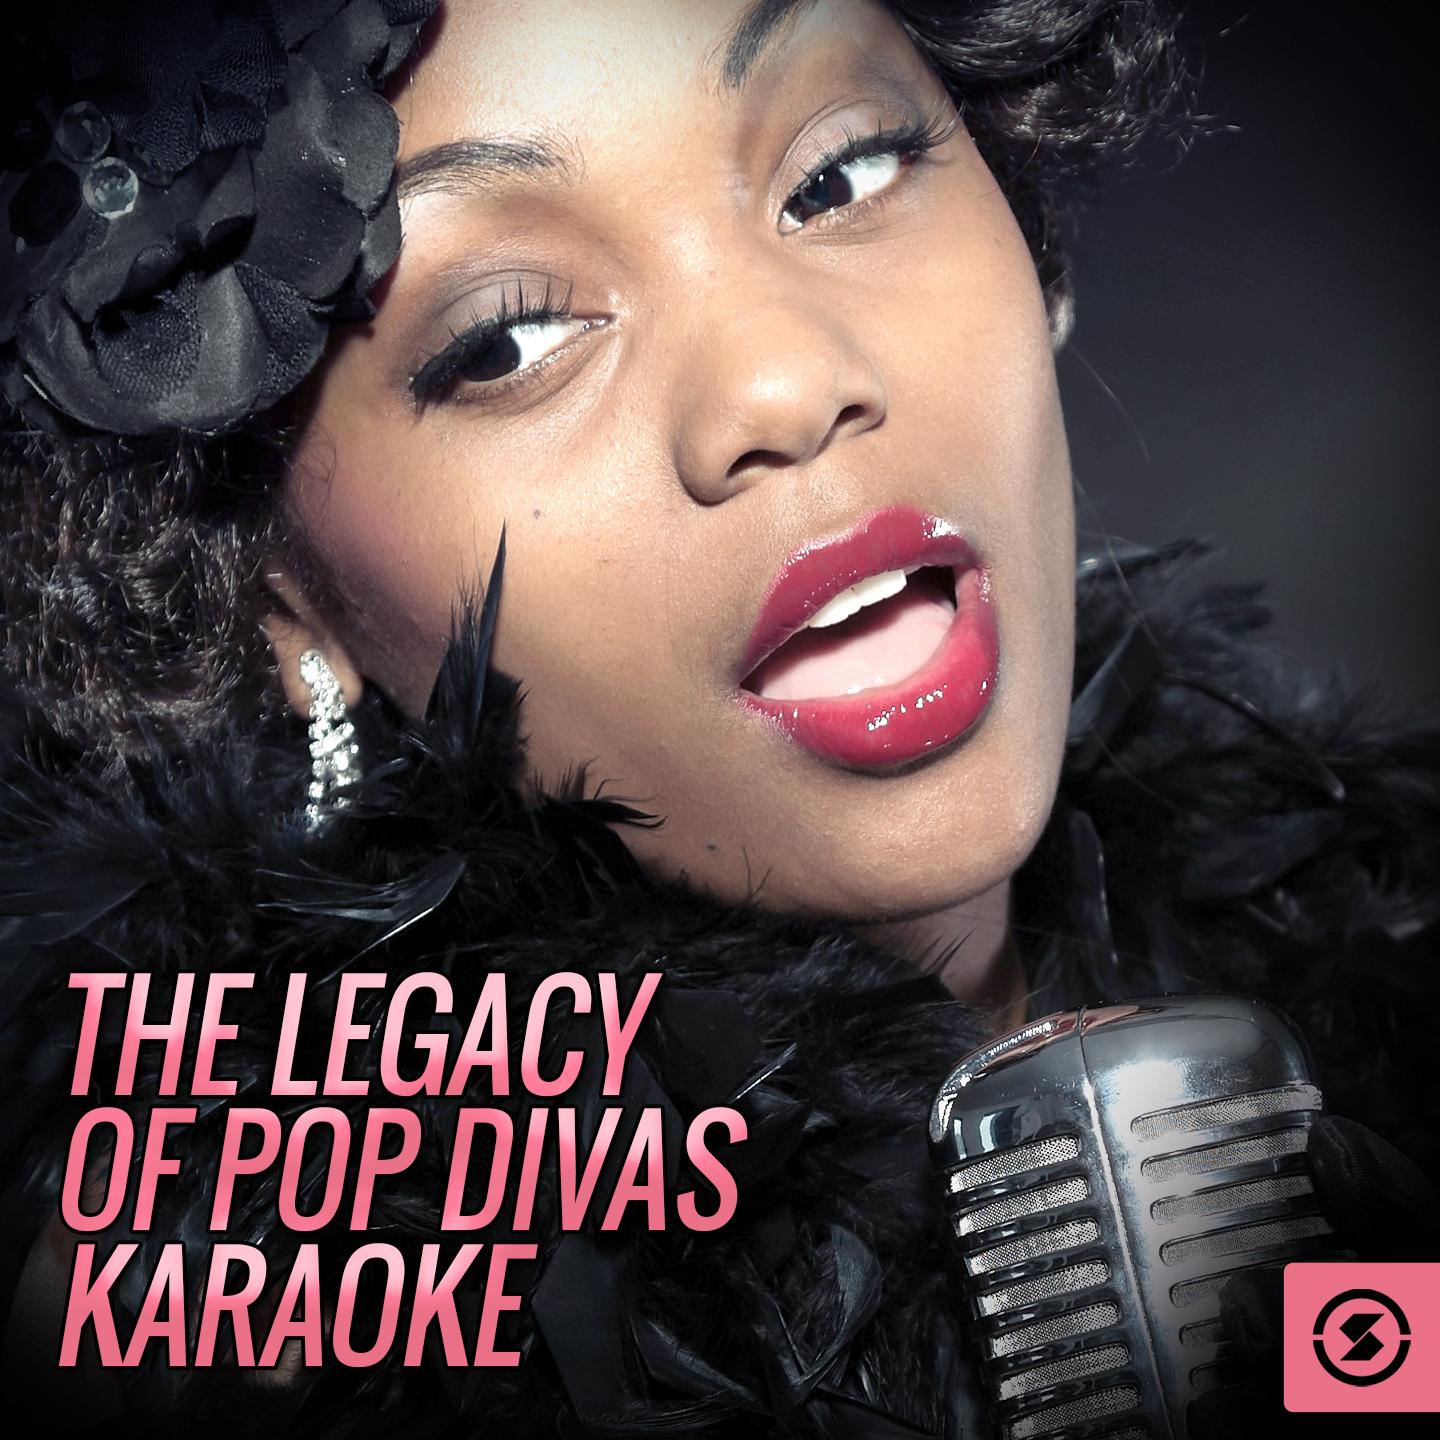 The Legacy Of Pop Divas Karaoke